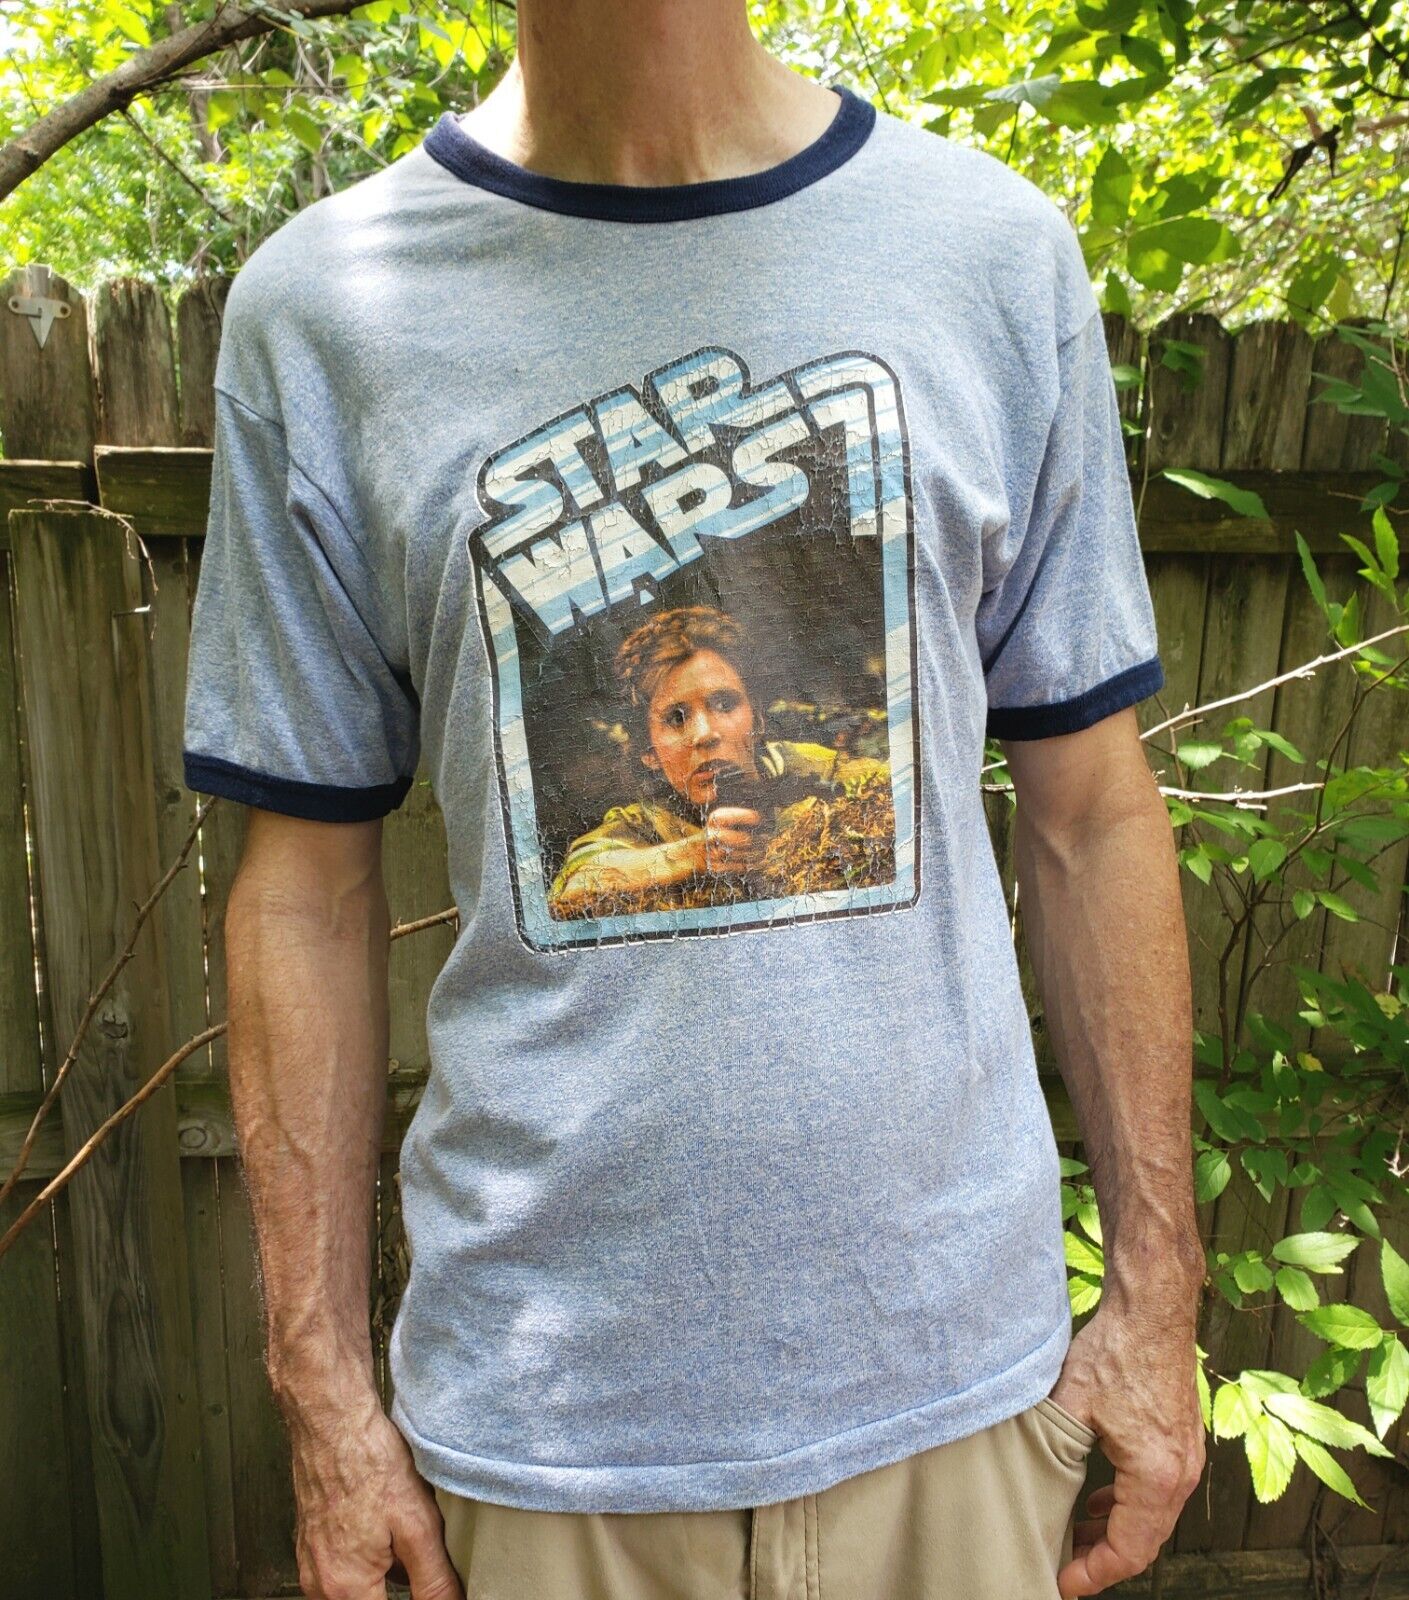 Super Rare Vtg 80s Star Wars T-Shirt Princess Leia With Gun 1977 M